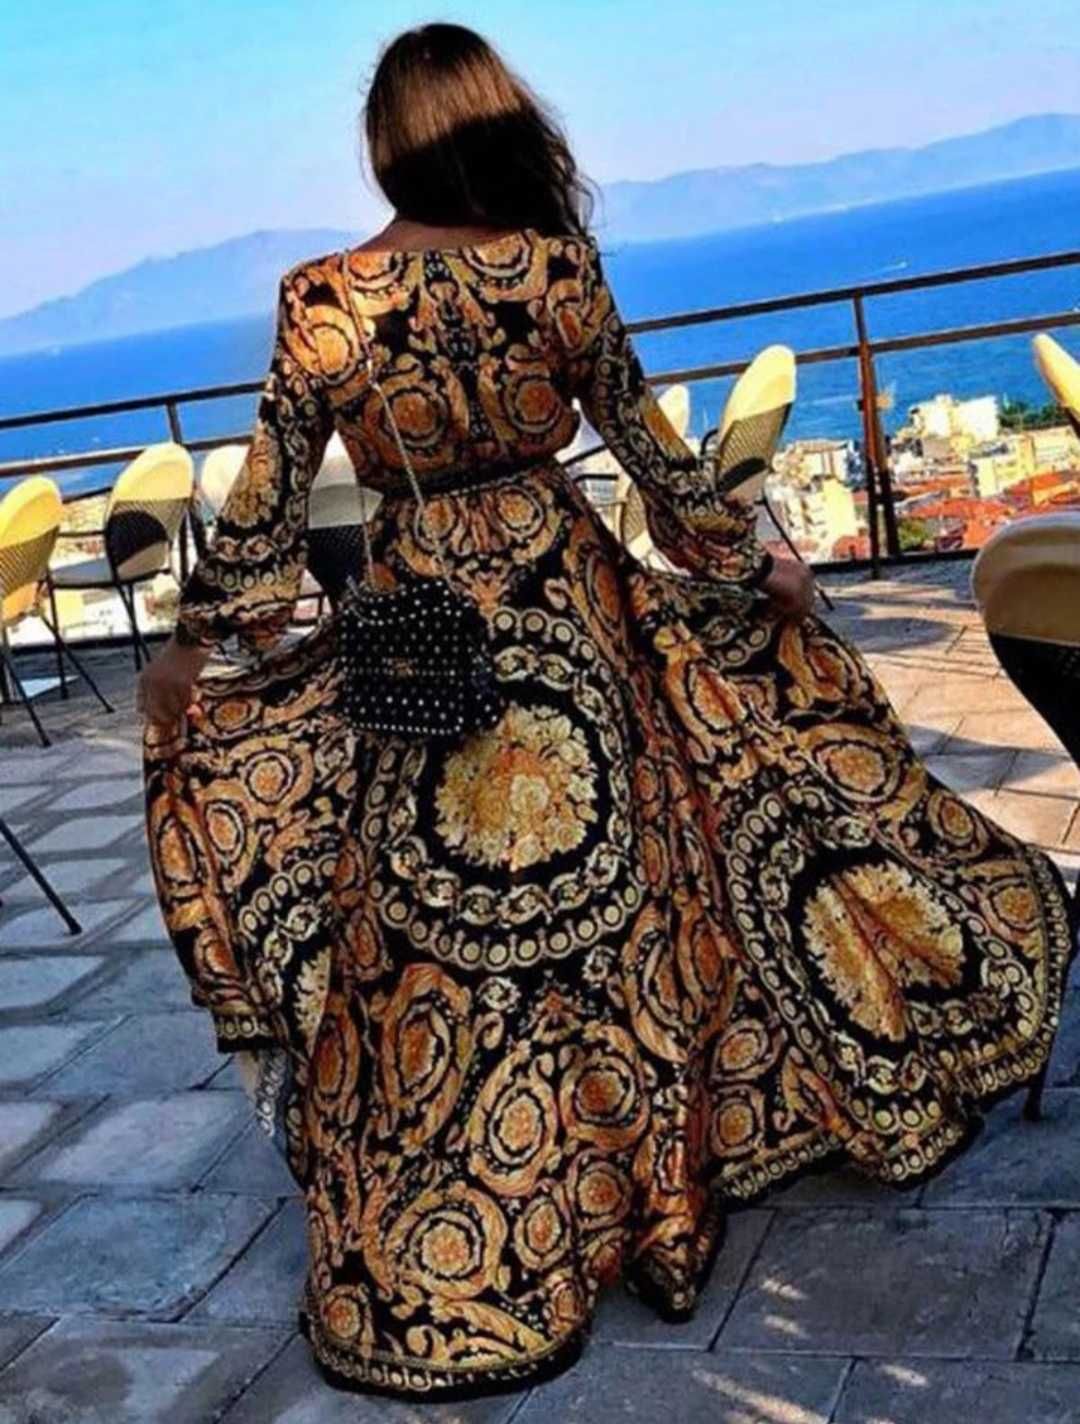 Instagram suknia nowa dluga plażowa arabskie wzory orientalna